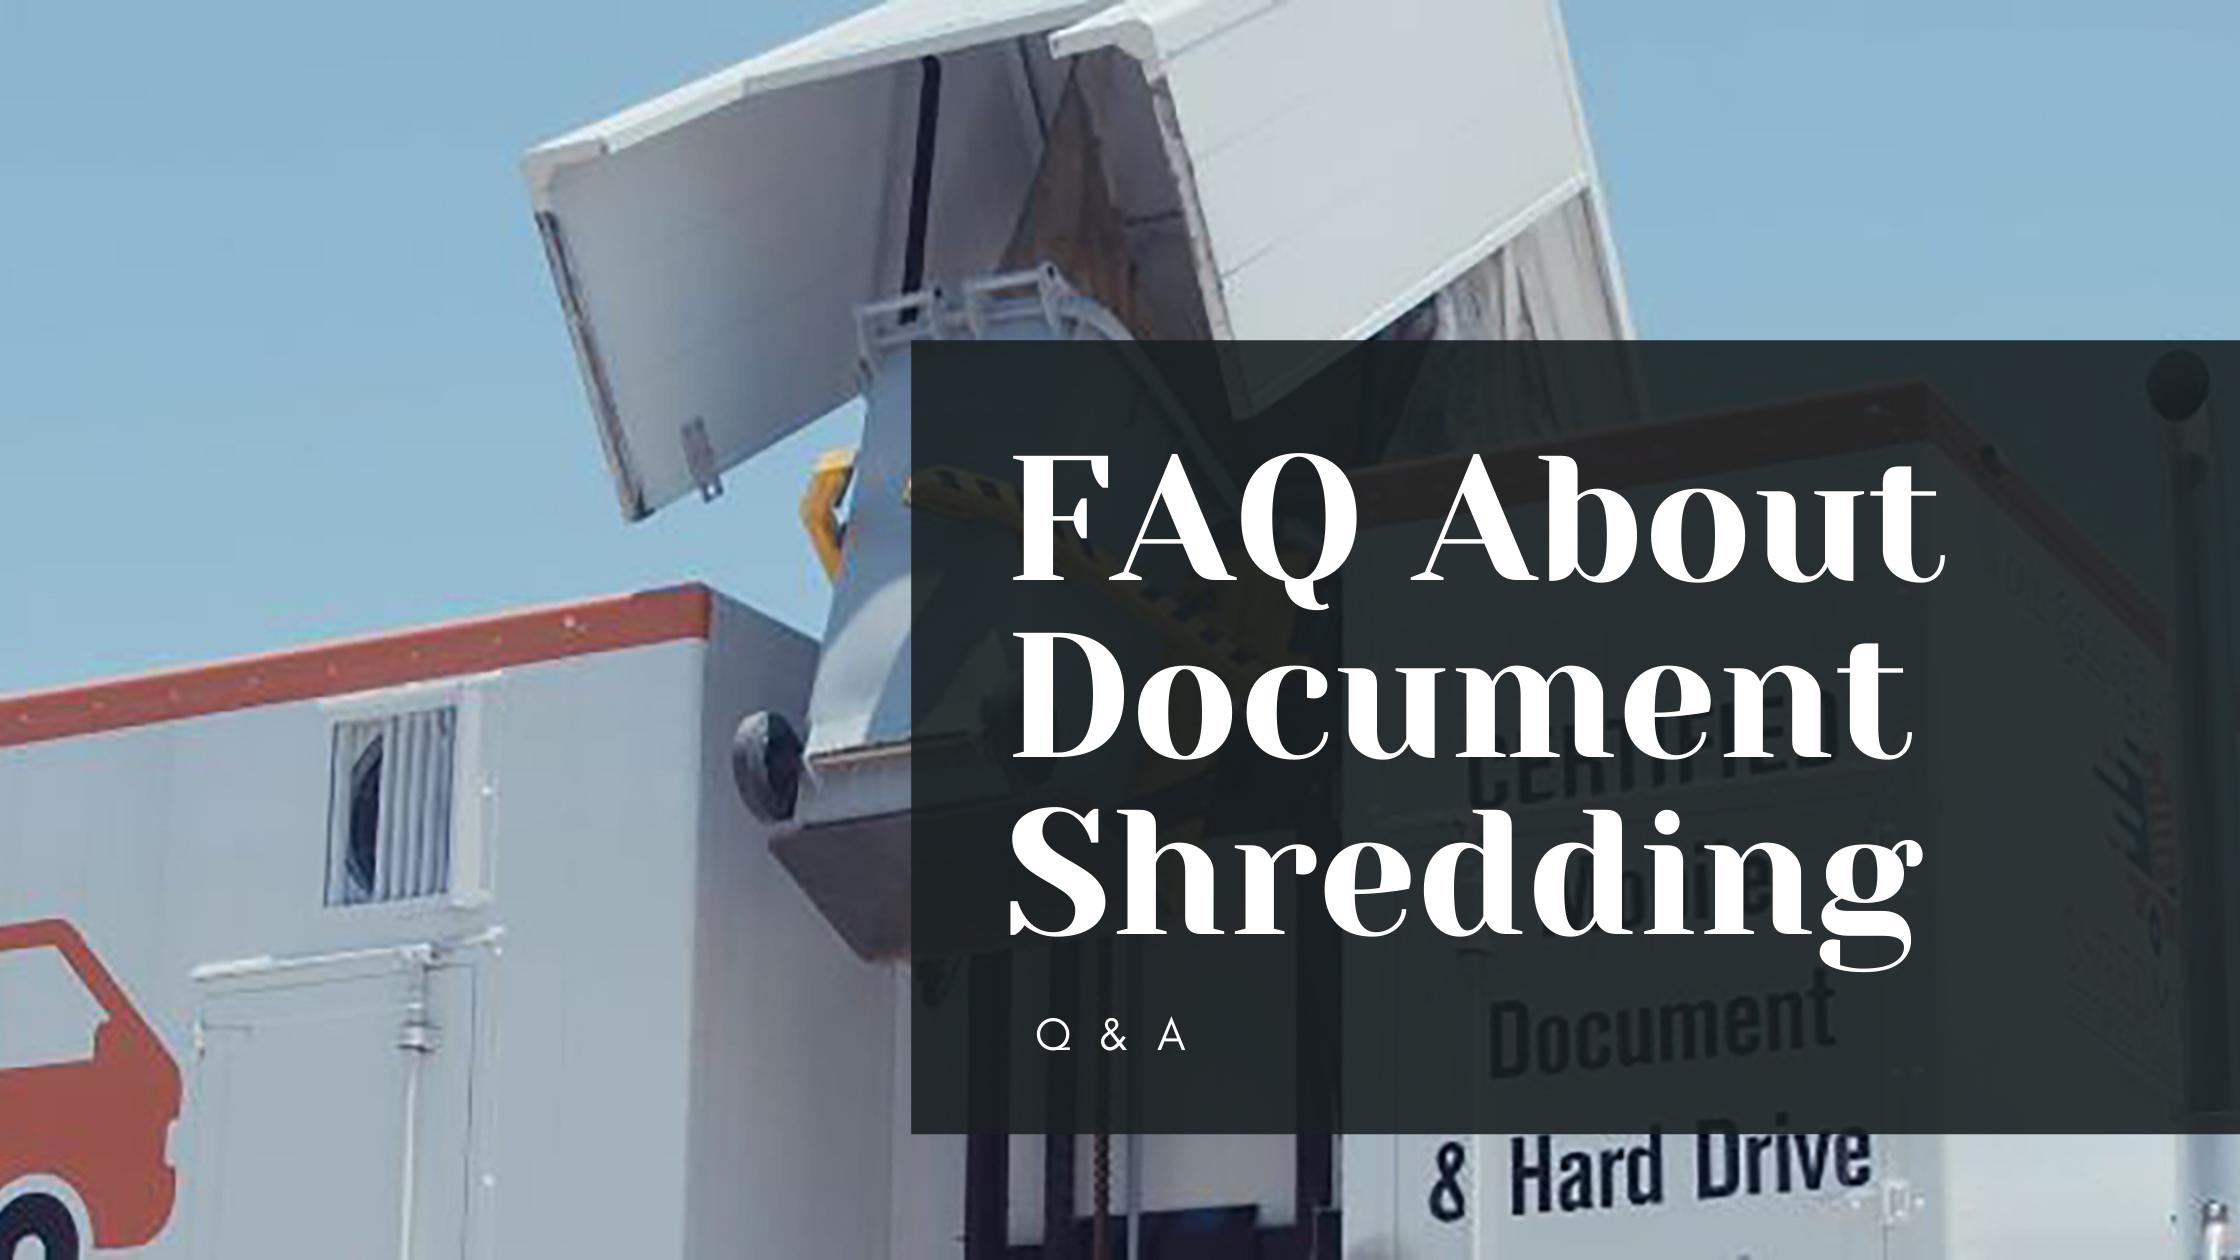 Mobile Document Shredding